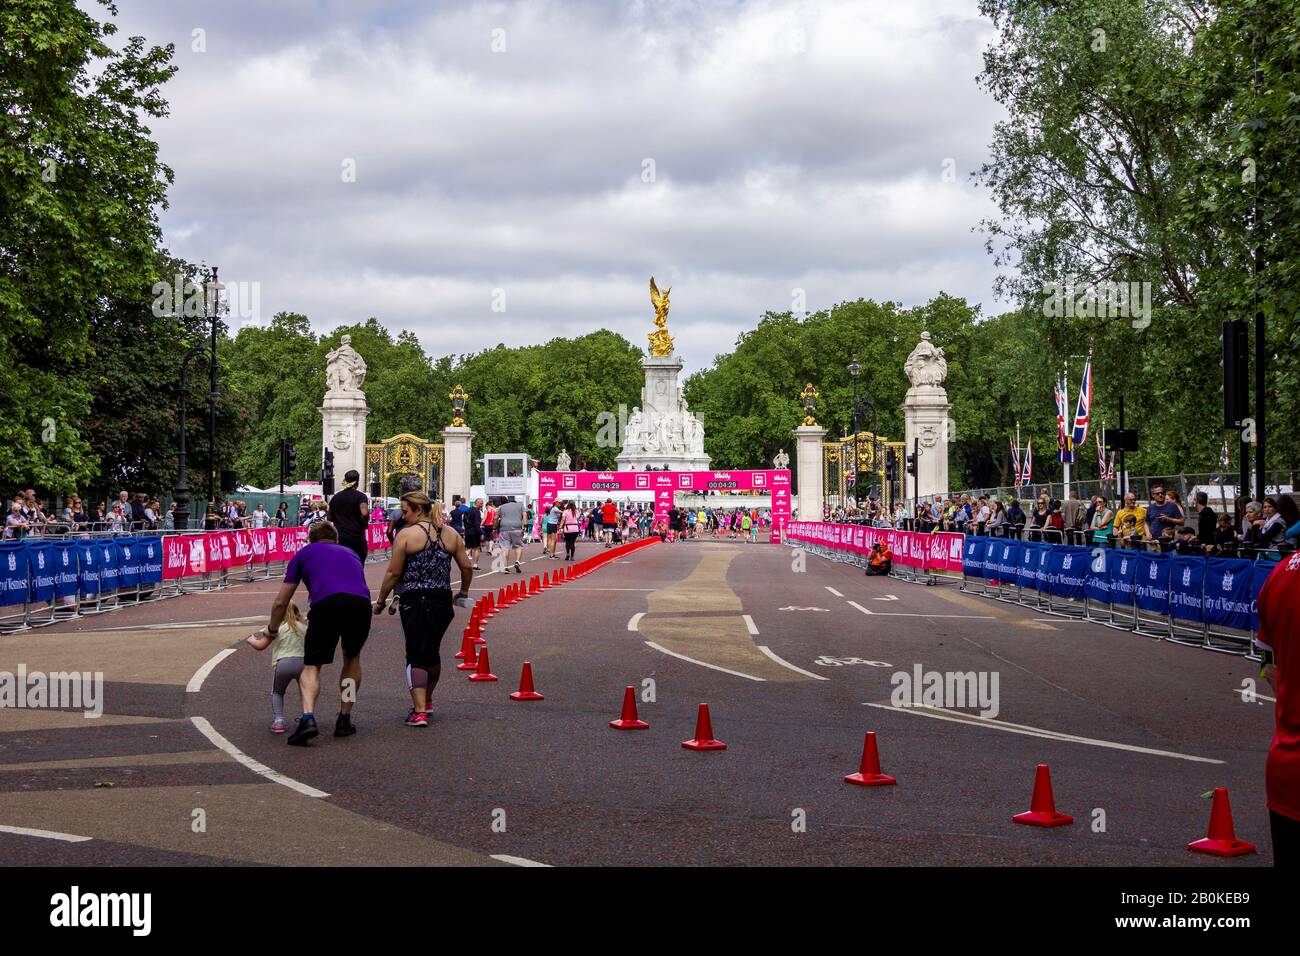 Londres/Angleterre - 26 mai 2019: Un portrait de paysage de la piste et quelques coureurs de l'événement de collecte de fonds Vitality London 10 000 à Londres, Angleterre. Ils Banque D'Images